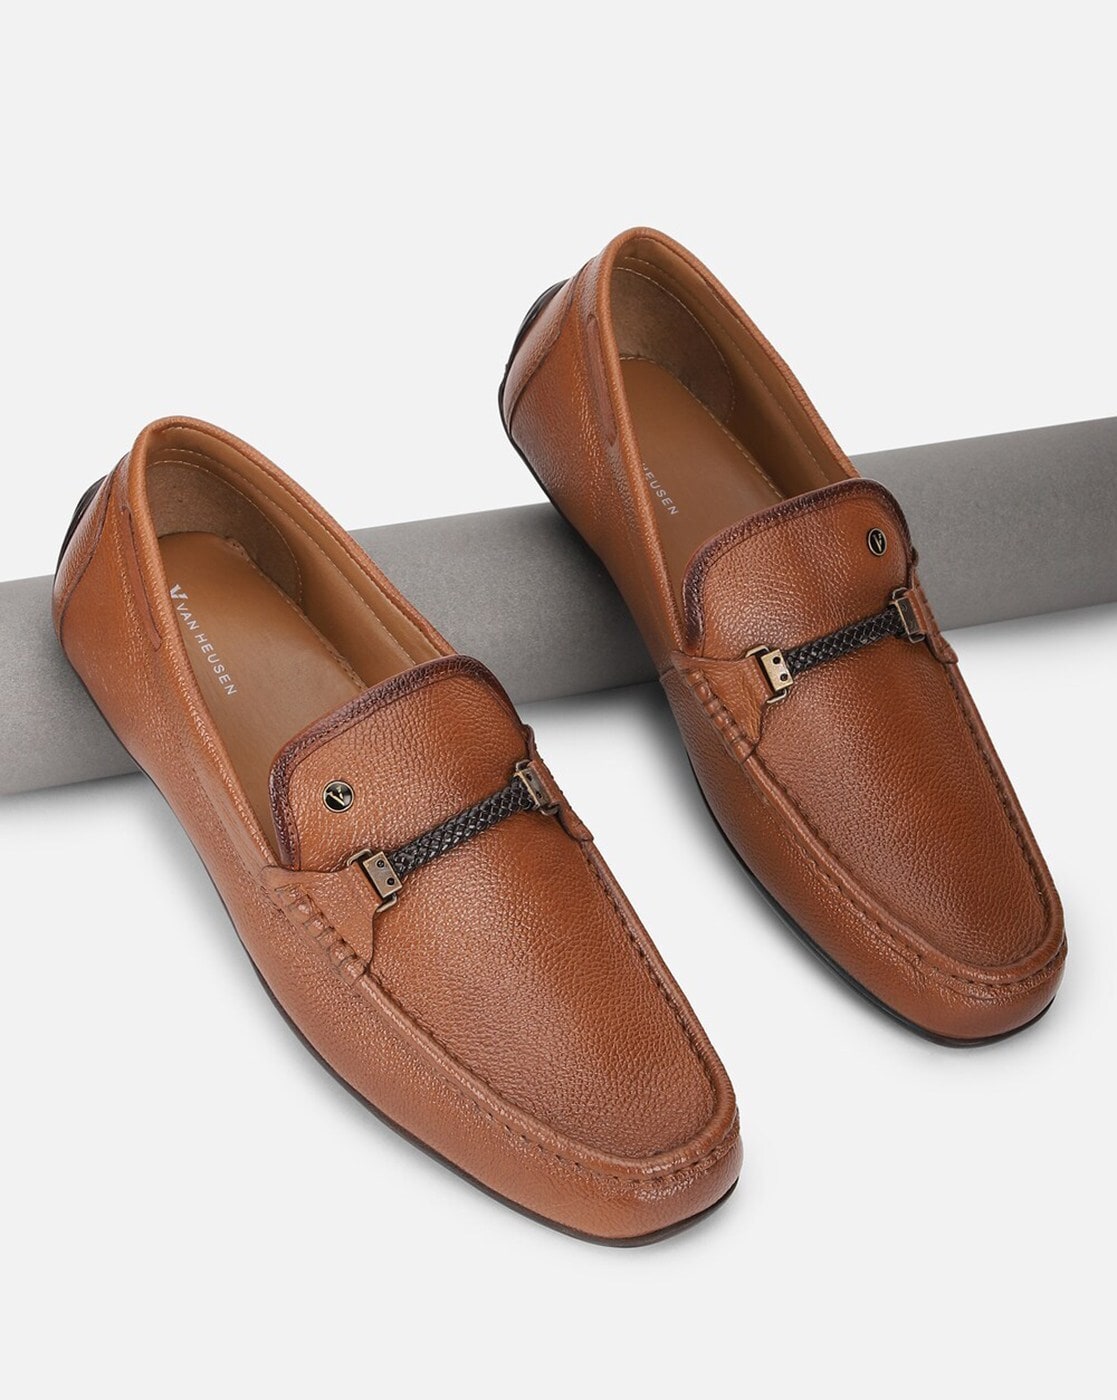 Van Heusen Shoes for Men, Online Sale up to 50% off